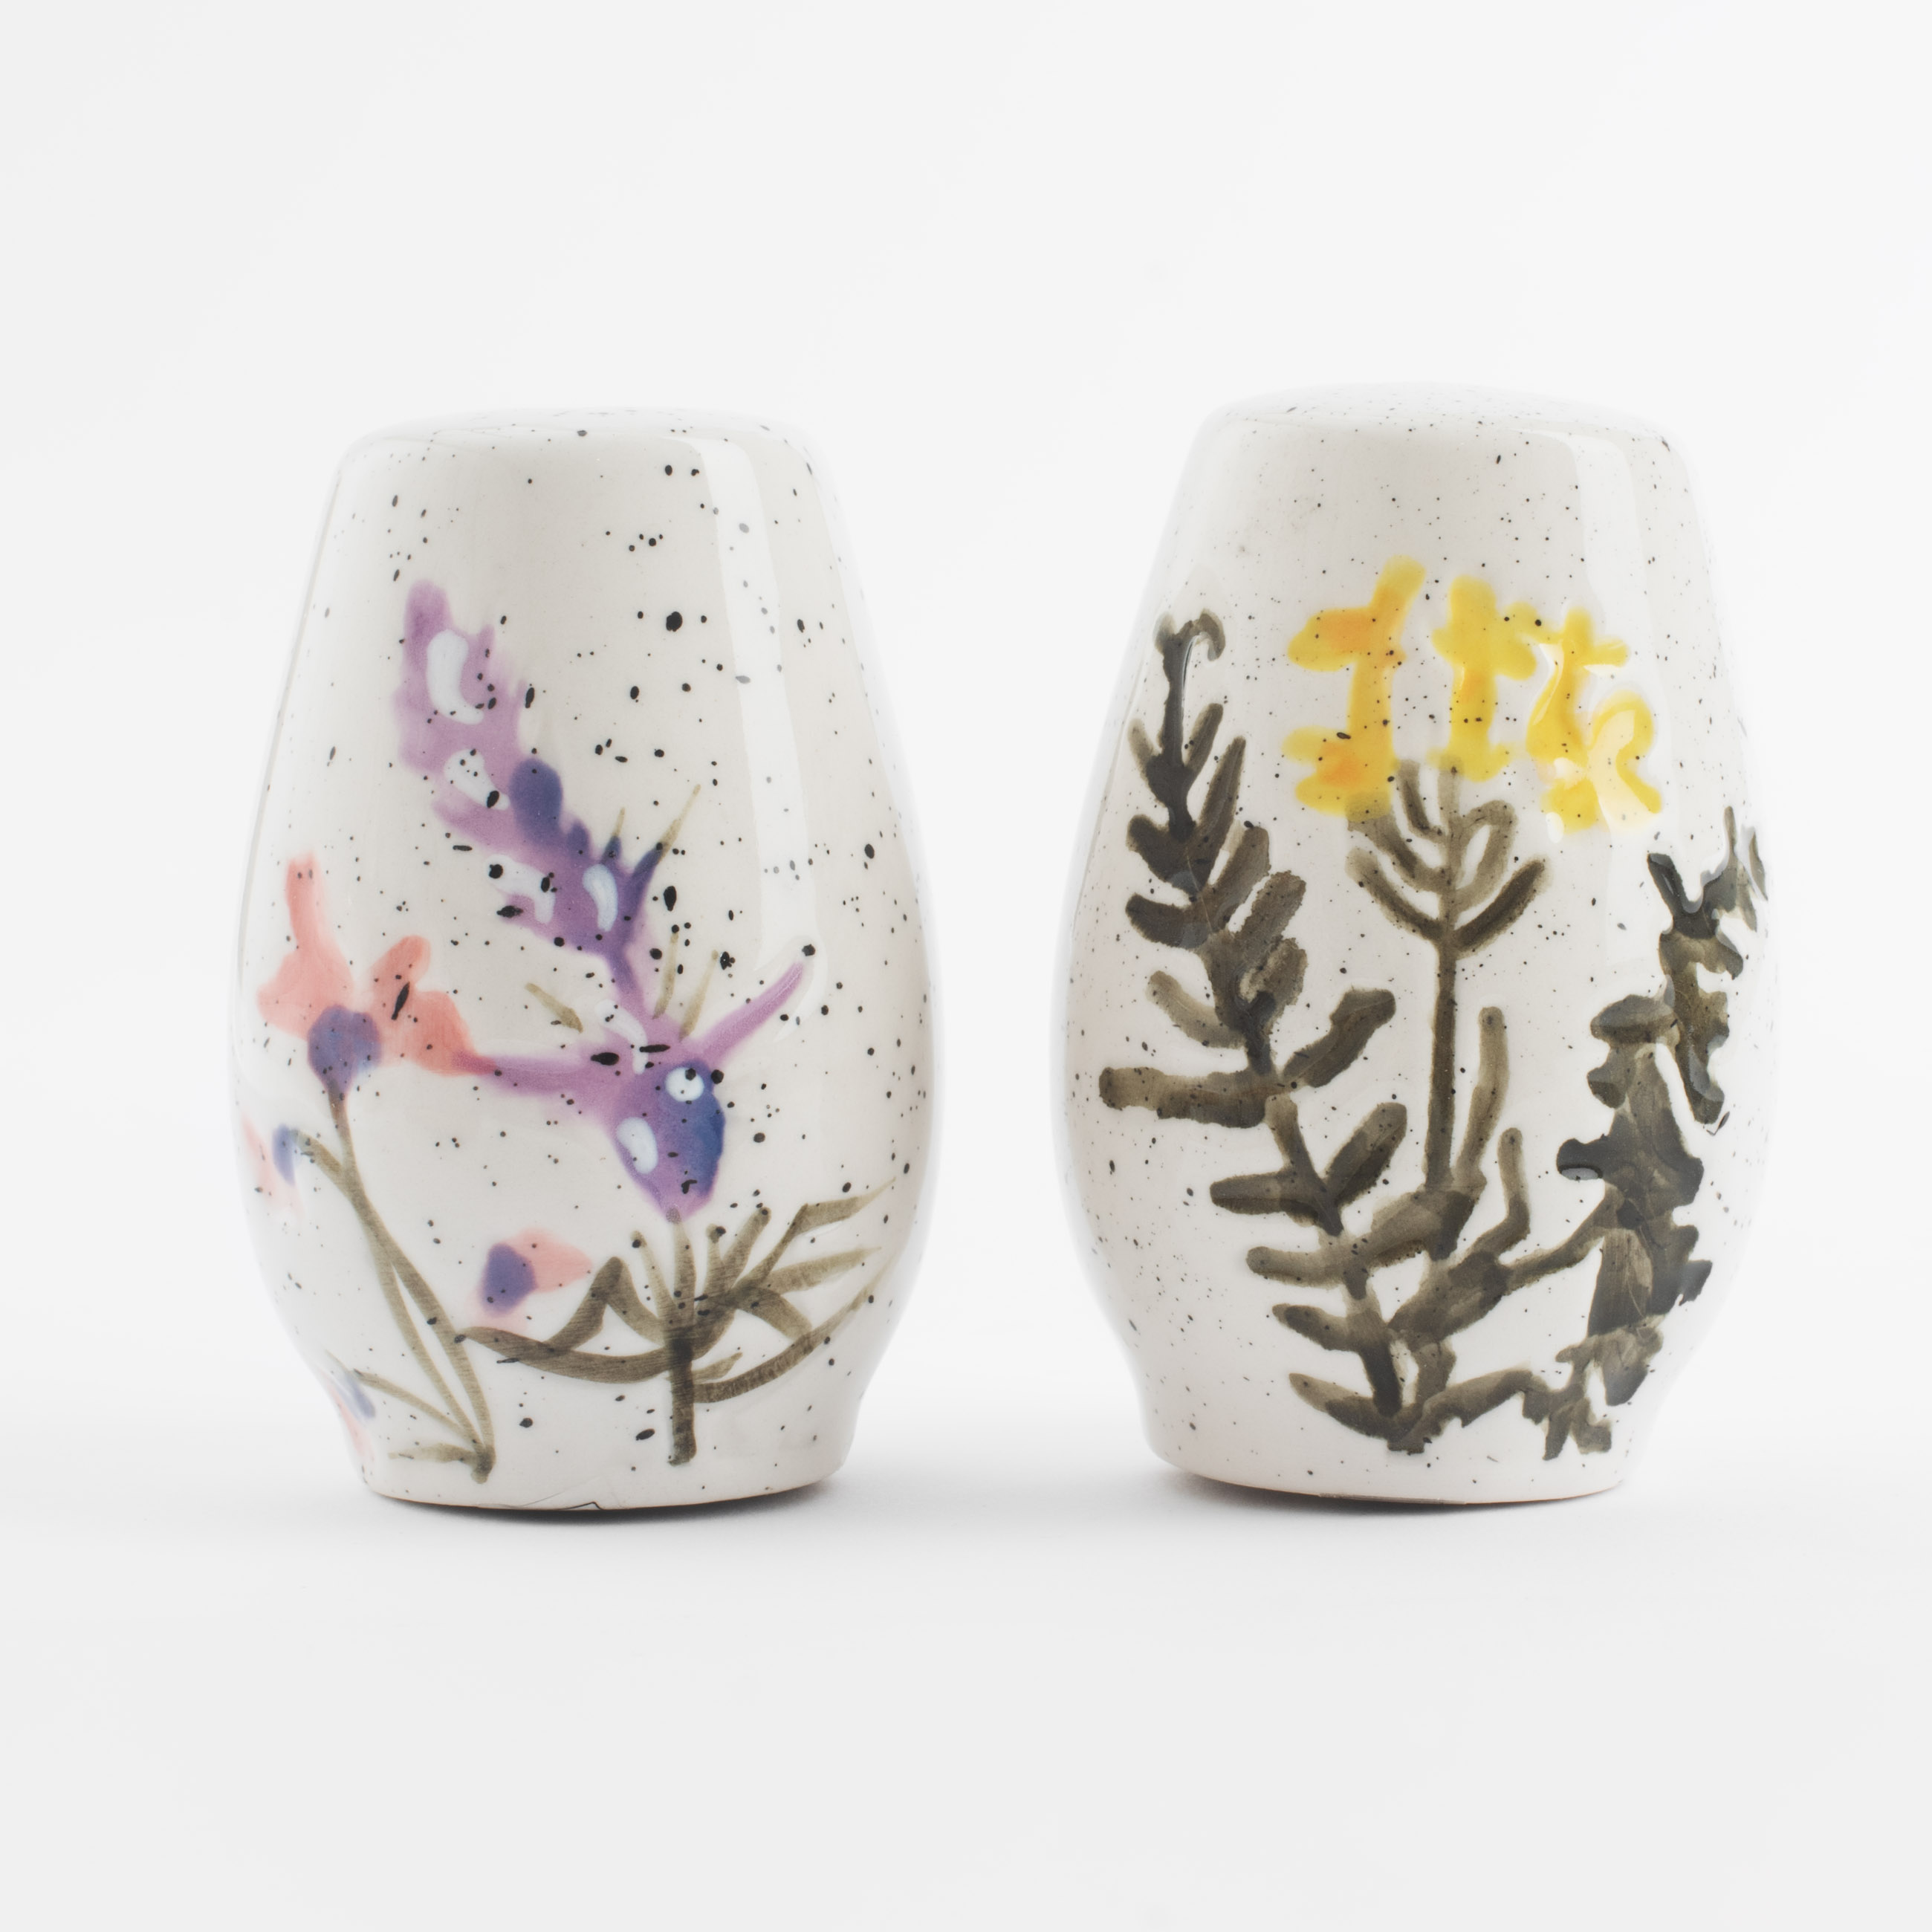 Набор для соли и перца, 7 см, керамика, молочный, в крапинку, Полевые цветы, Meadow speckled изображение № 2